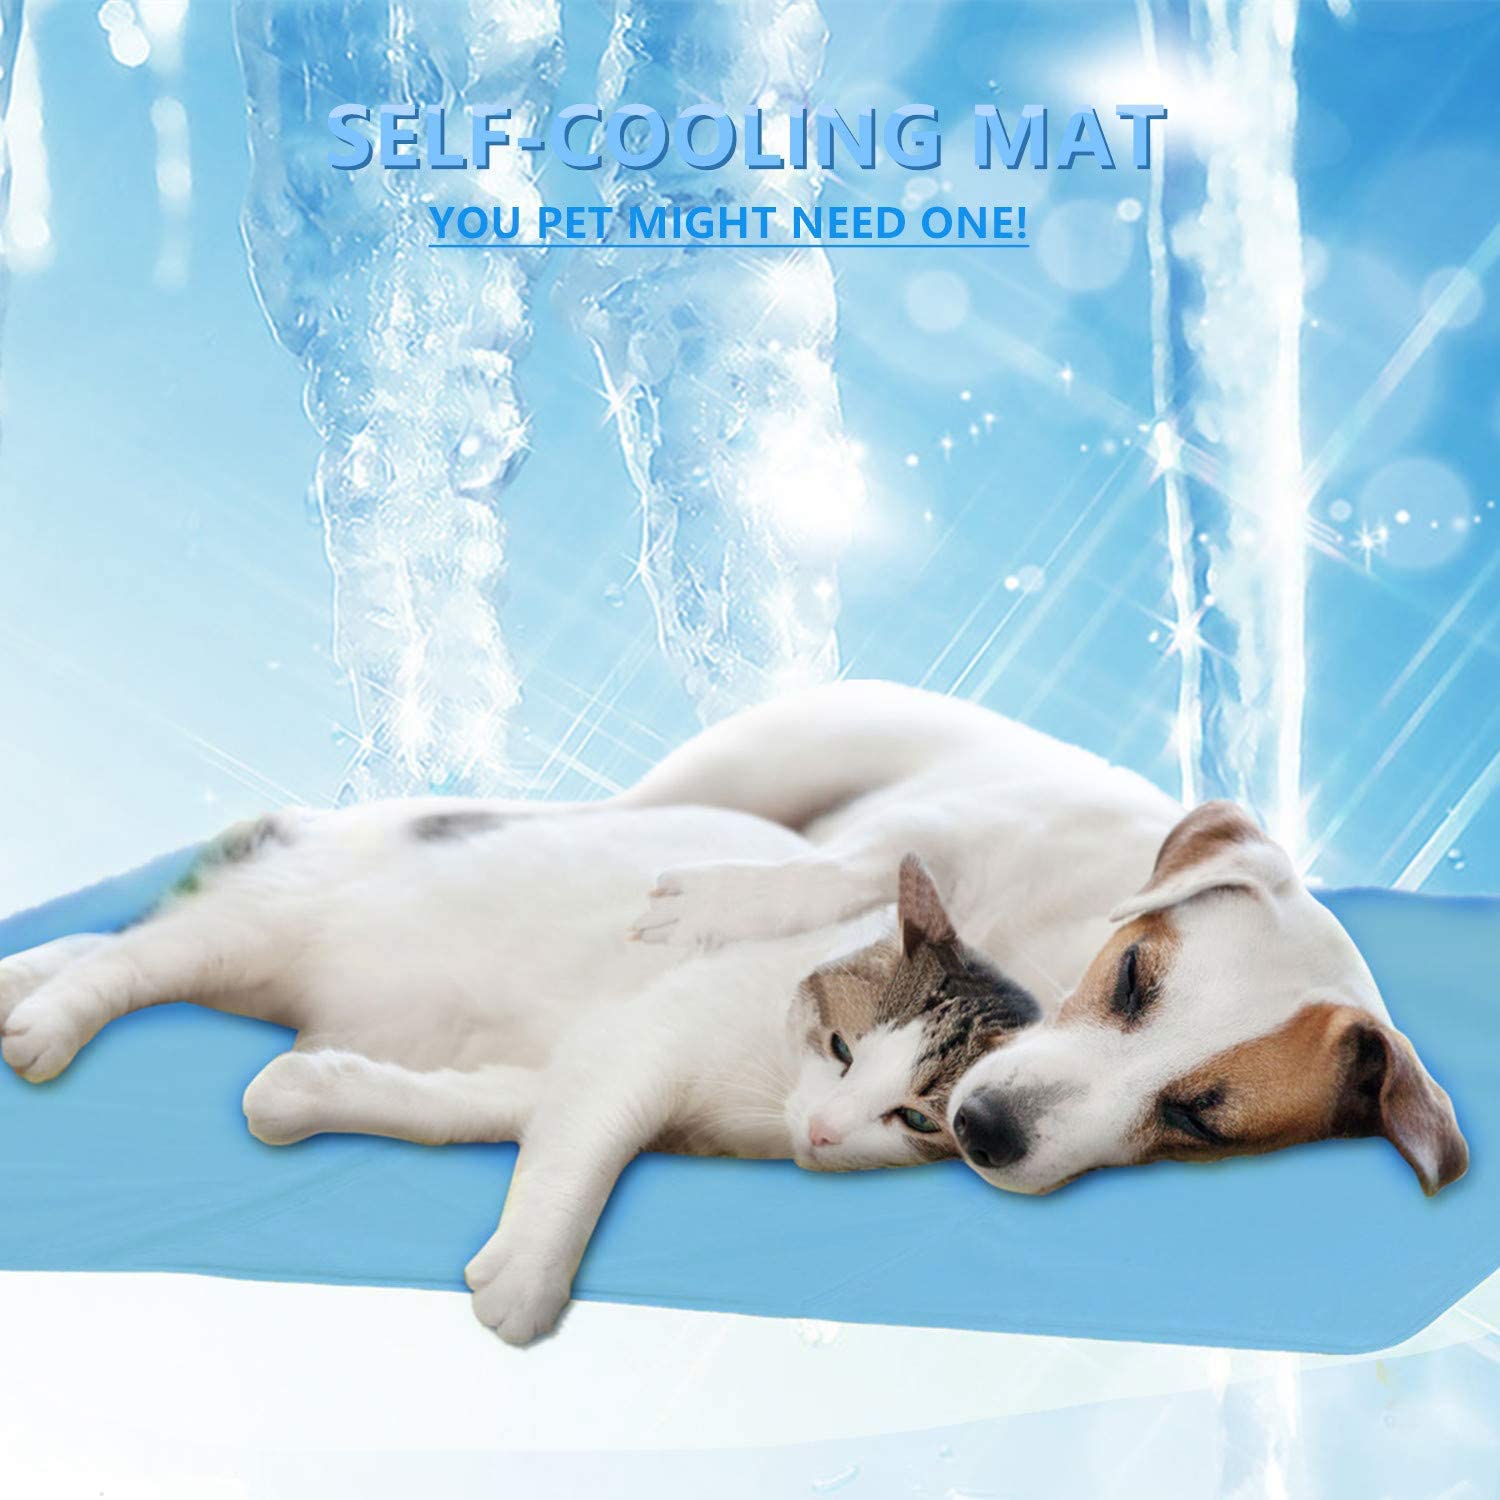  ForUUU Alfombrilla de Refrigeración Animales, Manta para Perros Fria Alfombra Refrescante para Mascotas Animales Manta de Dormir Fresco Cojín Azul (L: 27 * 18 in (90 * 60 cm)) 